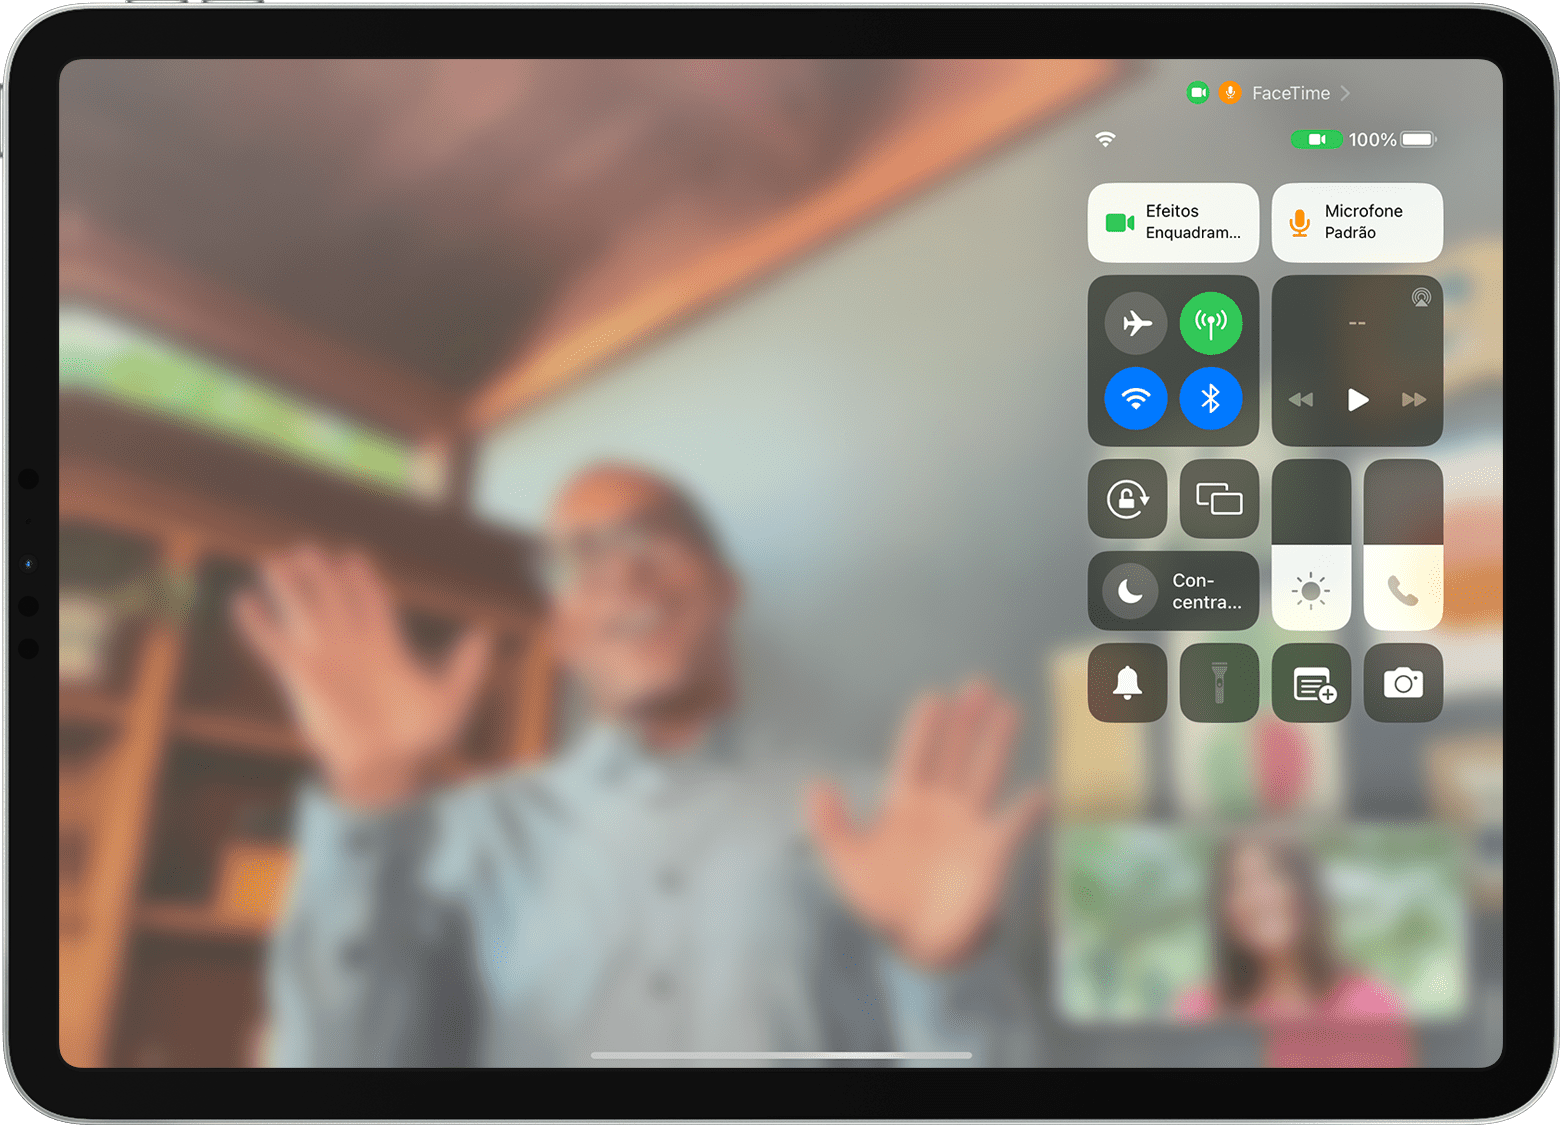 Ecrã do iPad a mostrar uma chamada FaceTime com a Central de controlo visível, incluindo o botão Efeitos